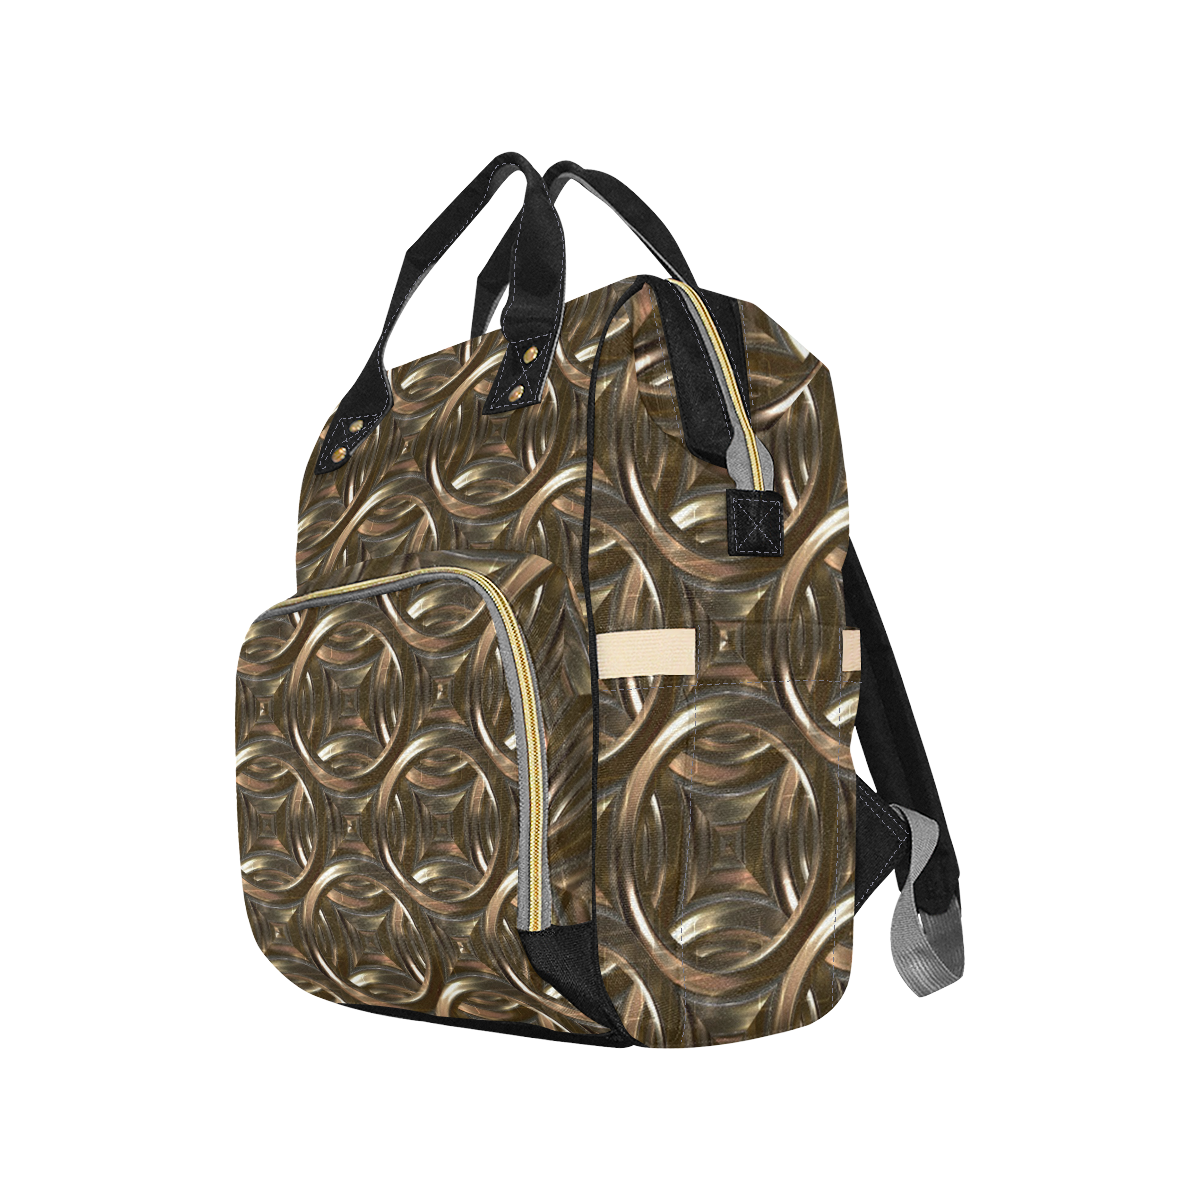 Metallic Gold Circles Stars Multi-Function Diaper Backpack/Diaper Bag (Model 1688)